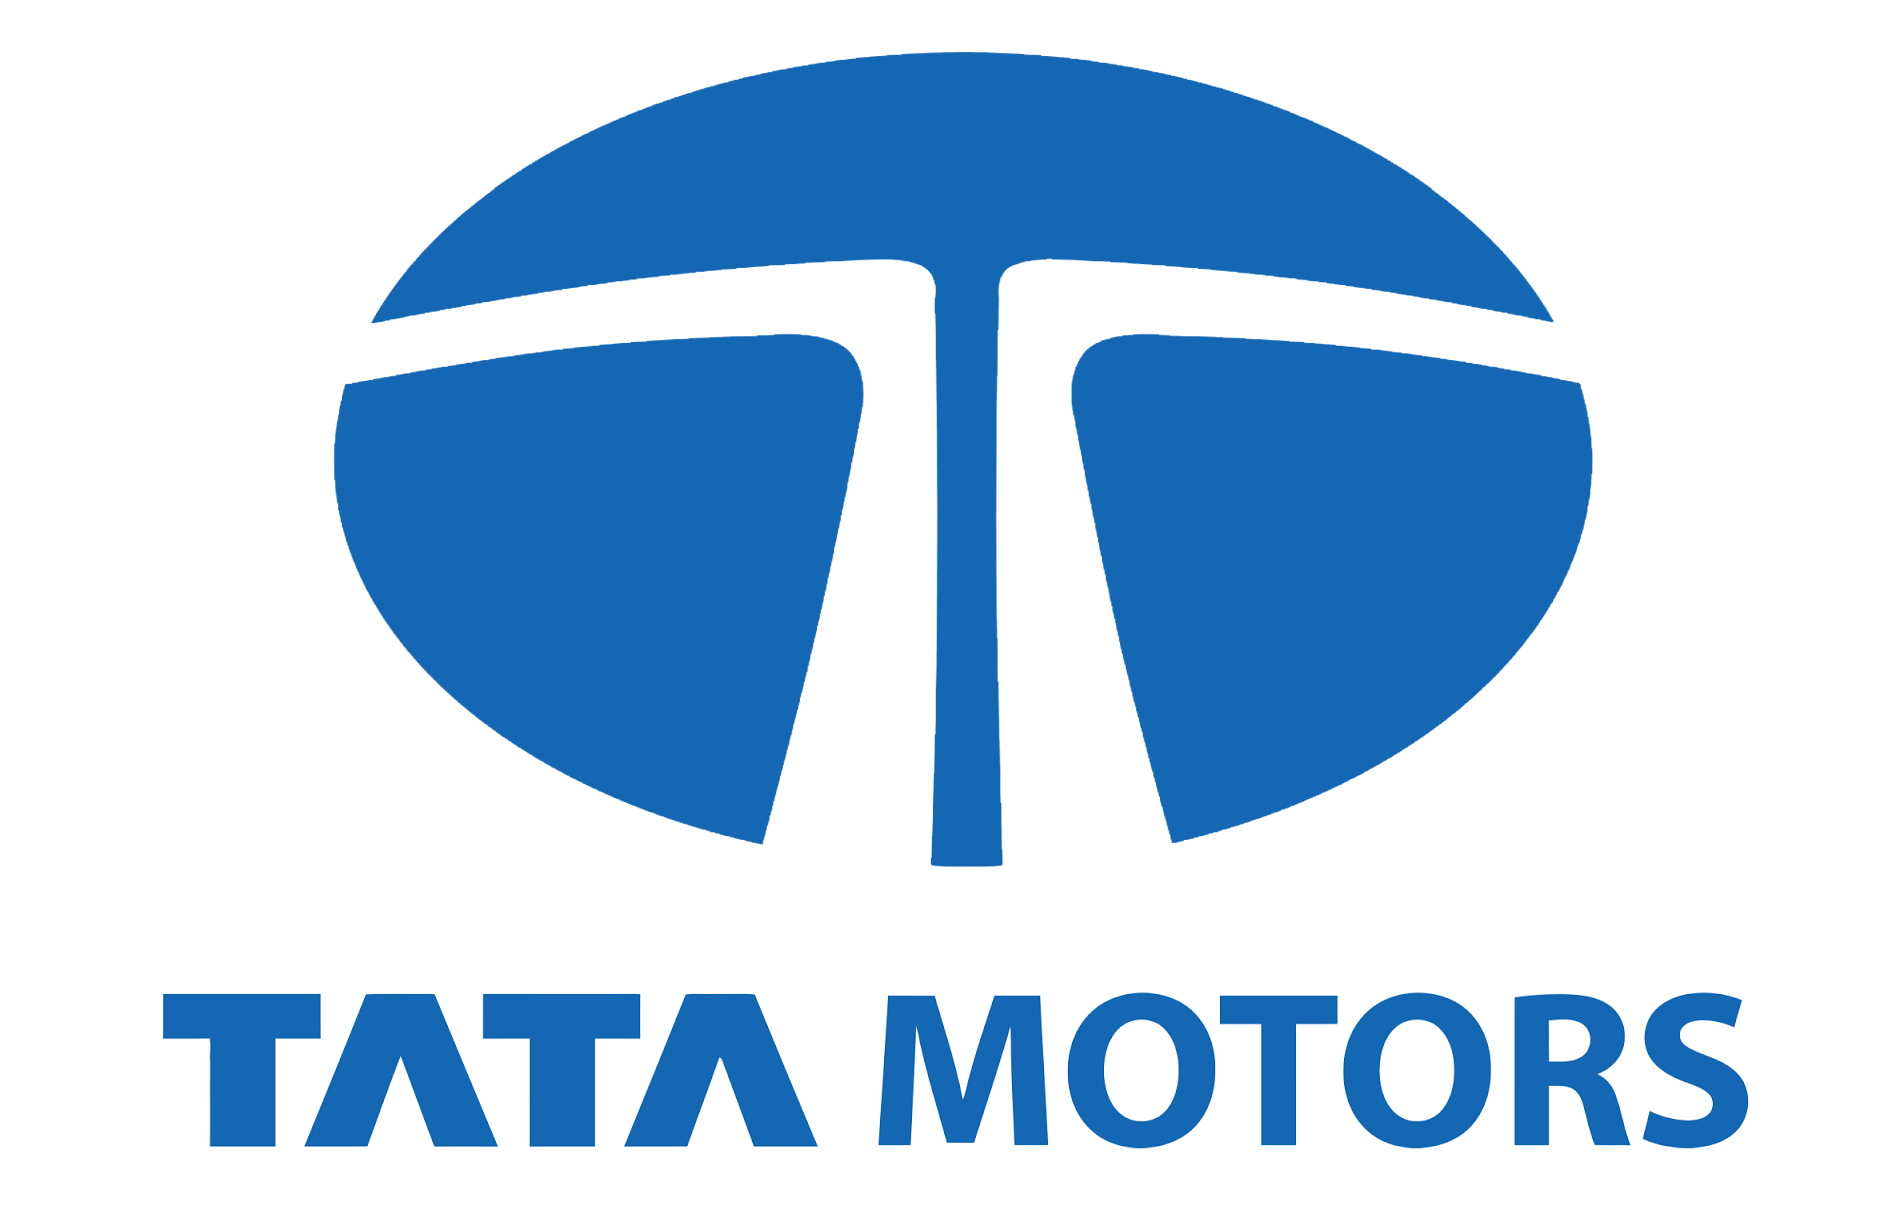 Tata Motors Cars Showroom - Dev Motors|Show Room|Automotive